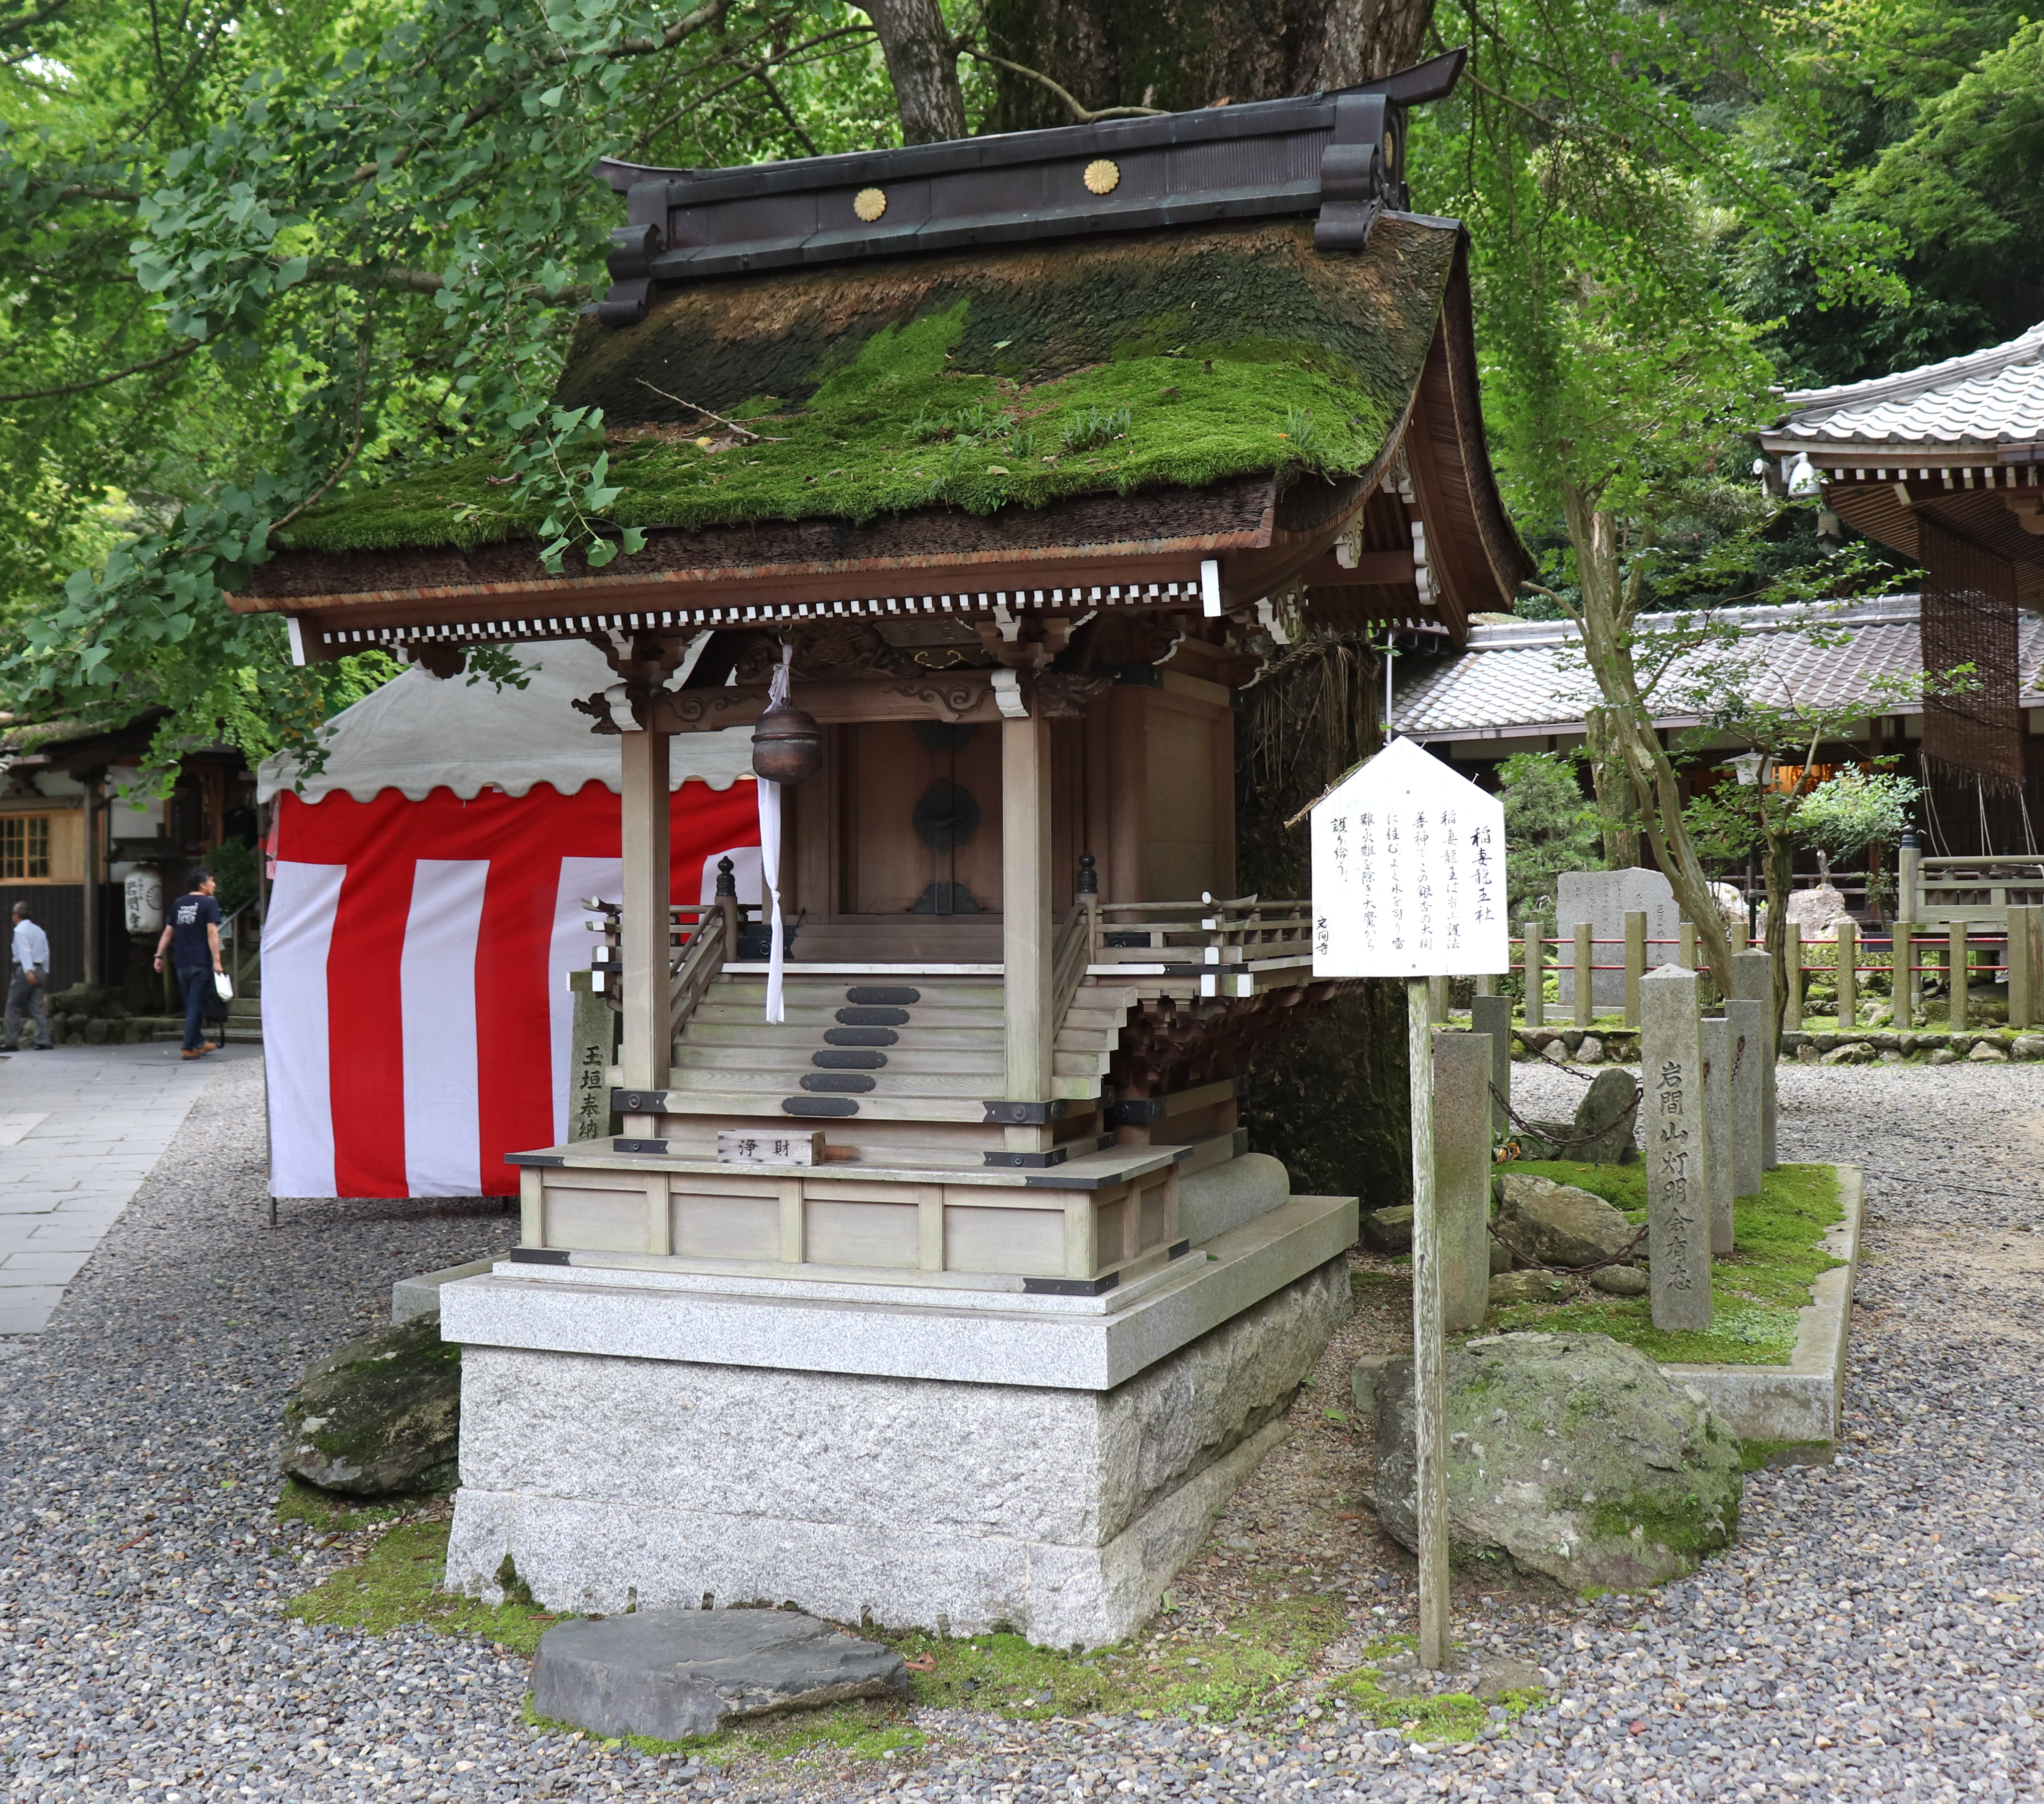 Inazuma Ryuo Shrine of Iwama-dera Temple in Shiga, Japan